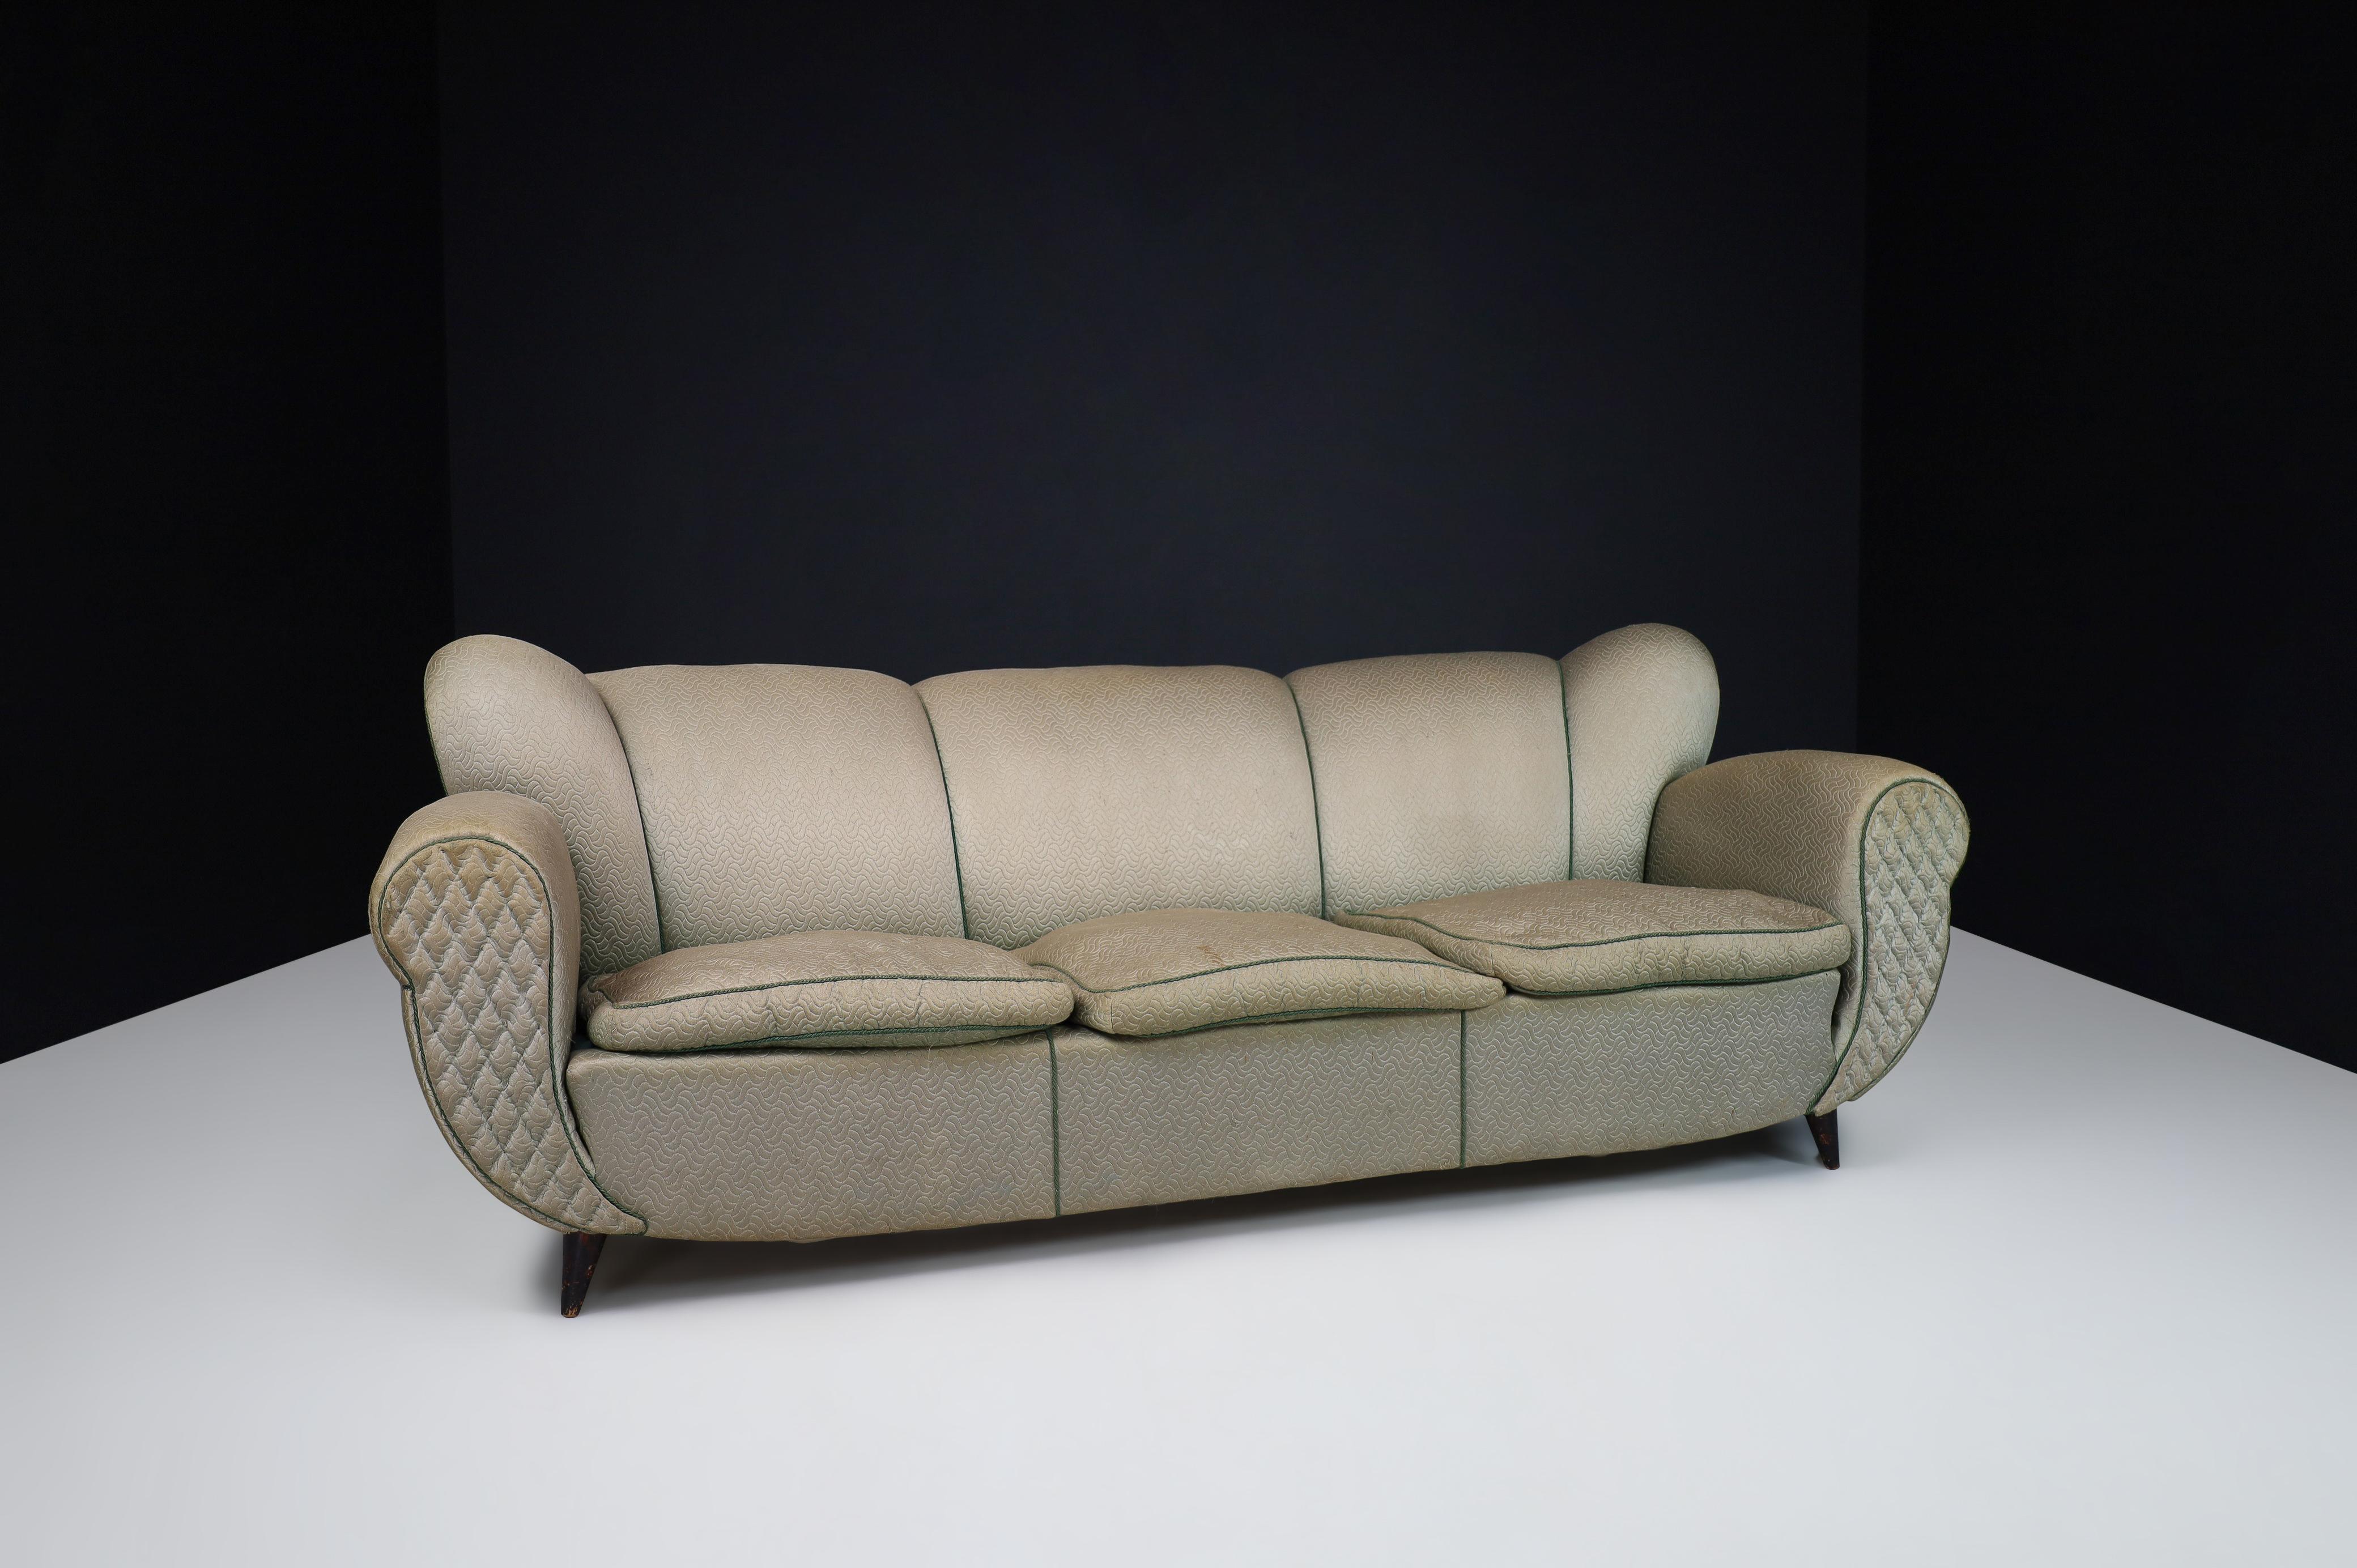 Guglielmo Ulrich Art Deco Sofa in Original Fabric, Italy 1930s In Good Condition For Sale In Almelo, NL